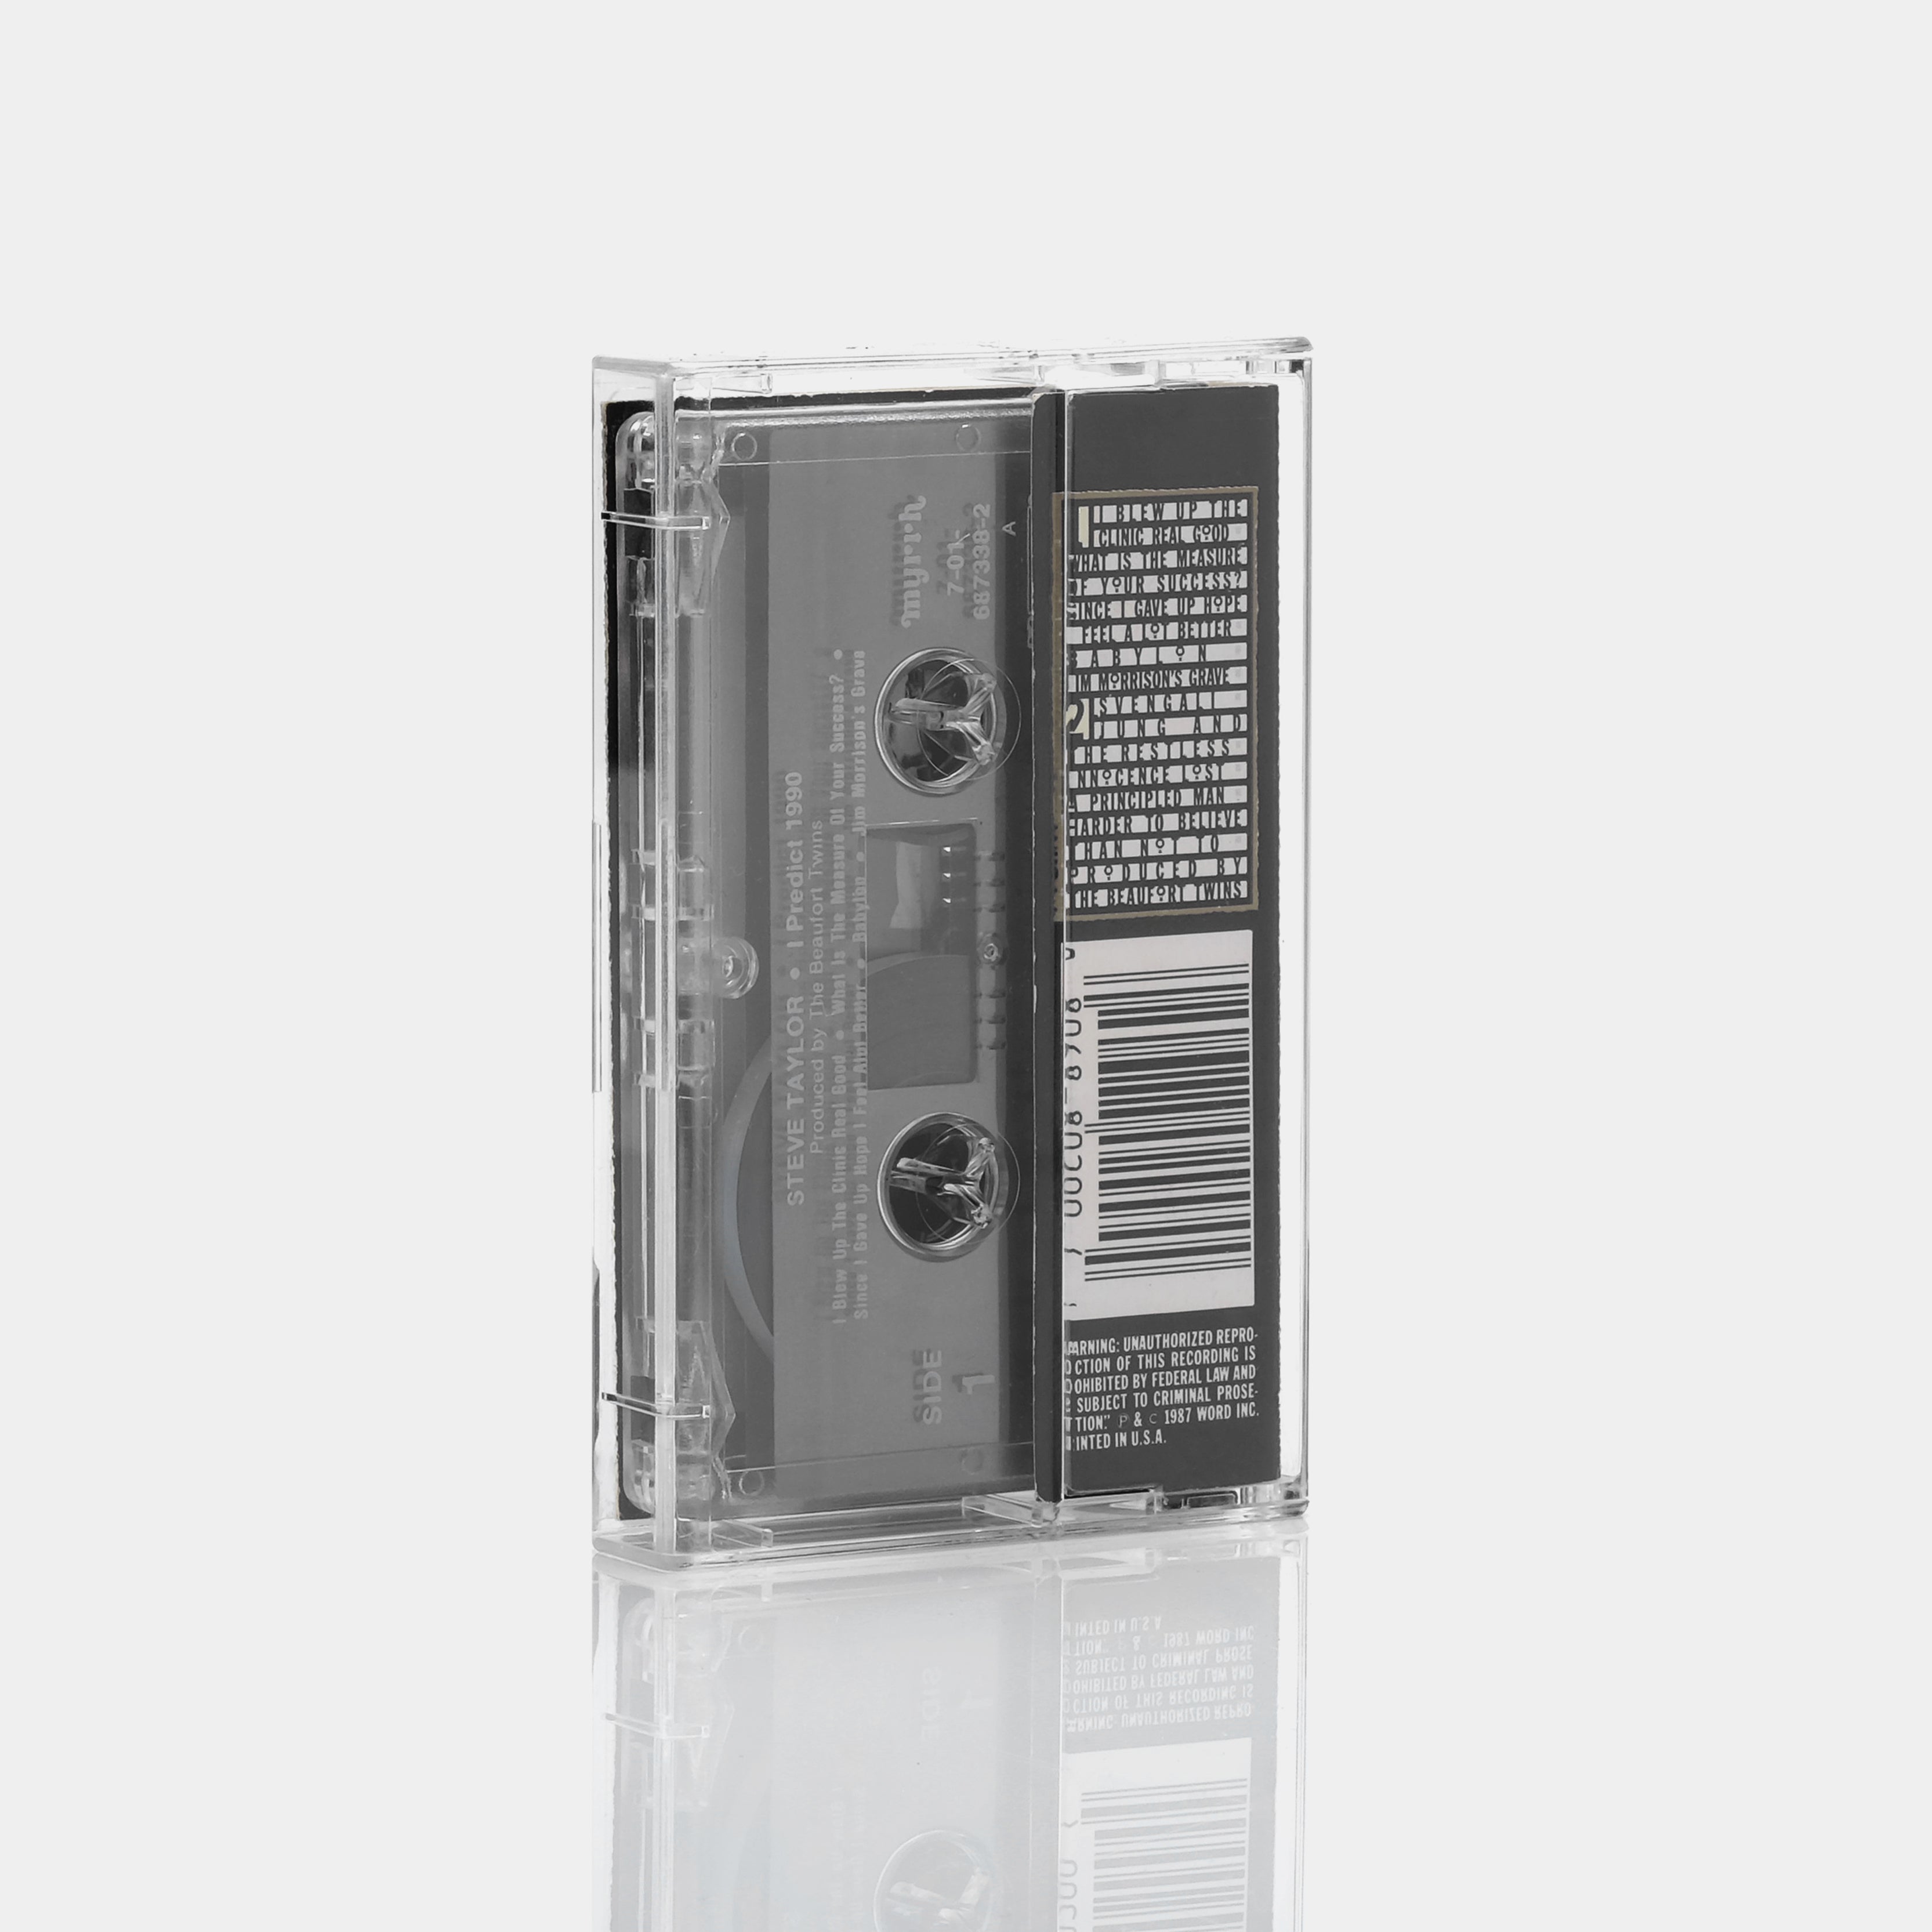 Steve Taylor - I Predict 1990 Cassette Tape